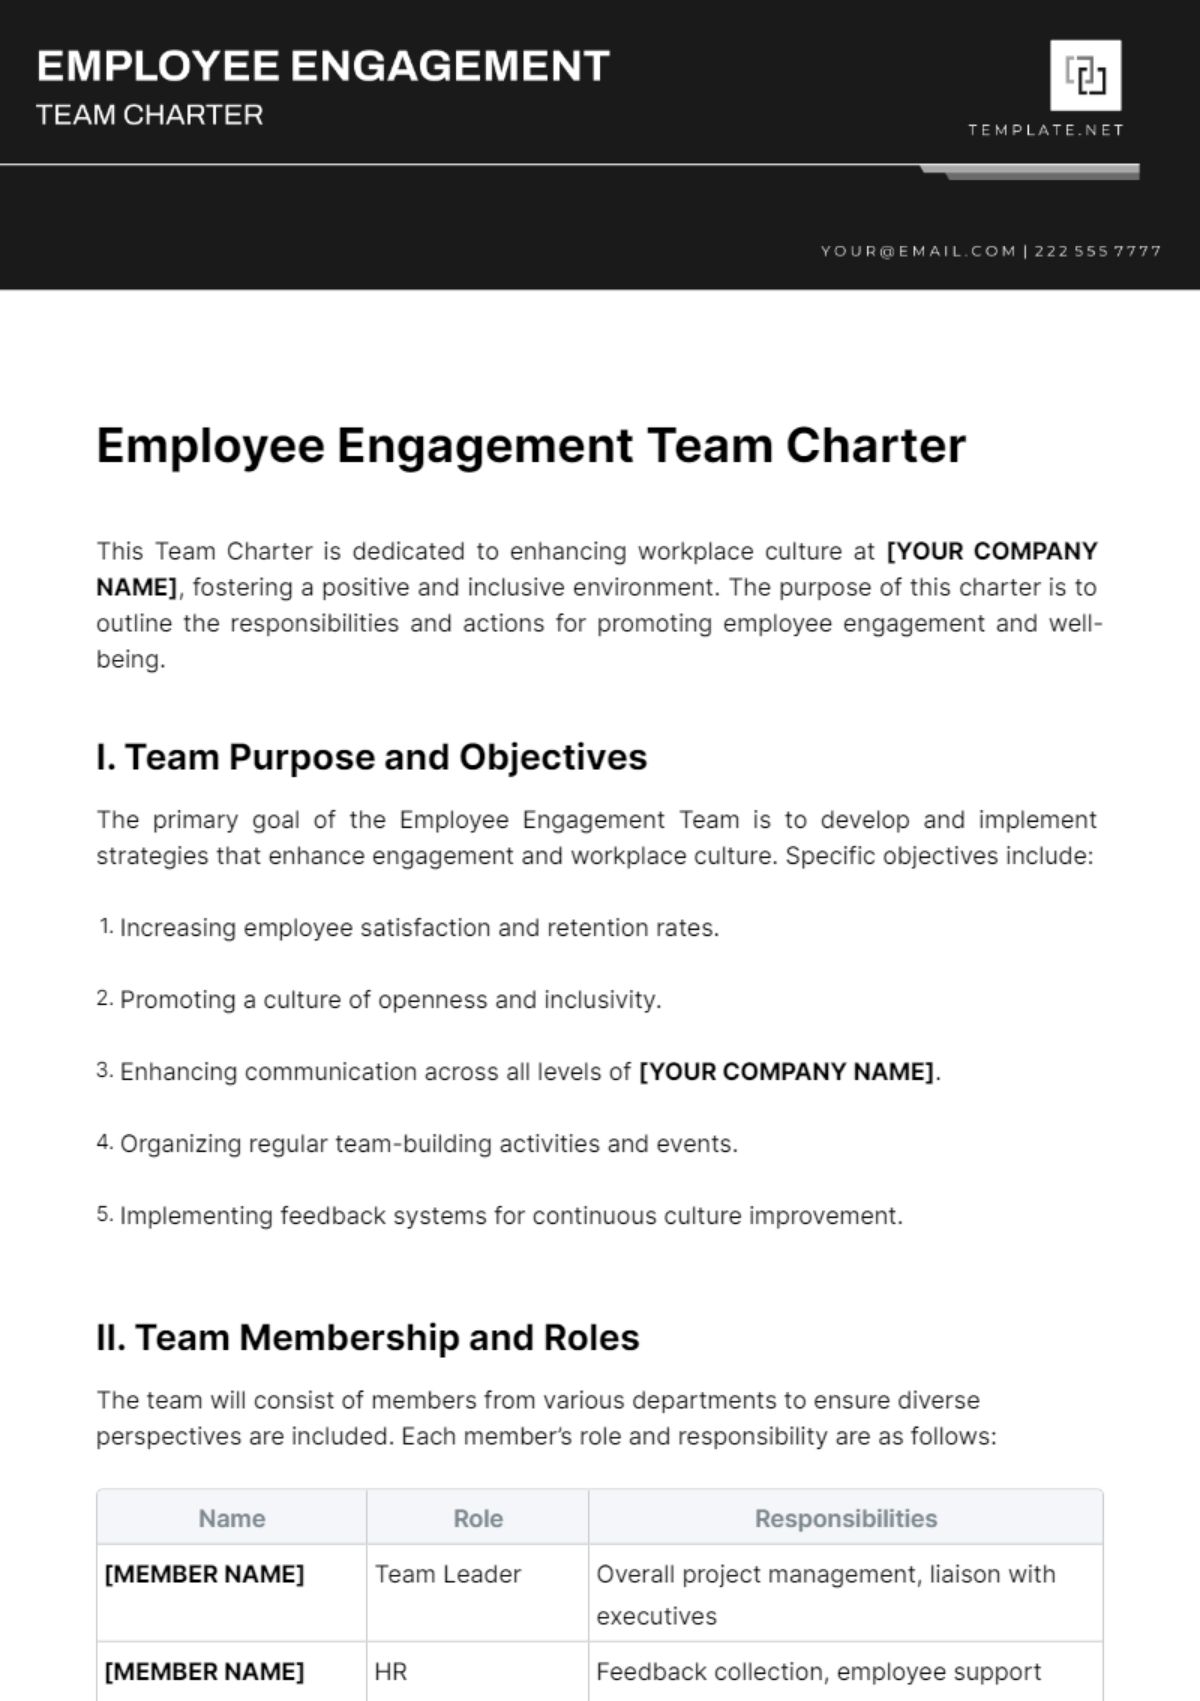 Employee Engagement Team Charter Template